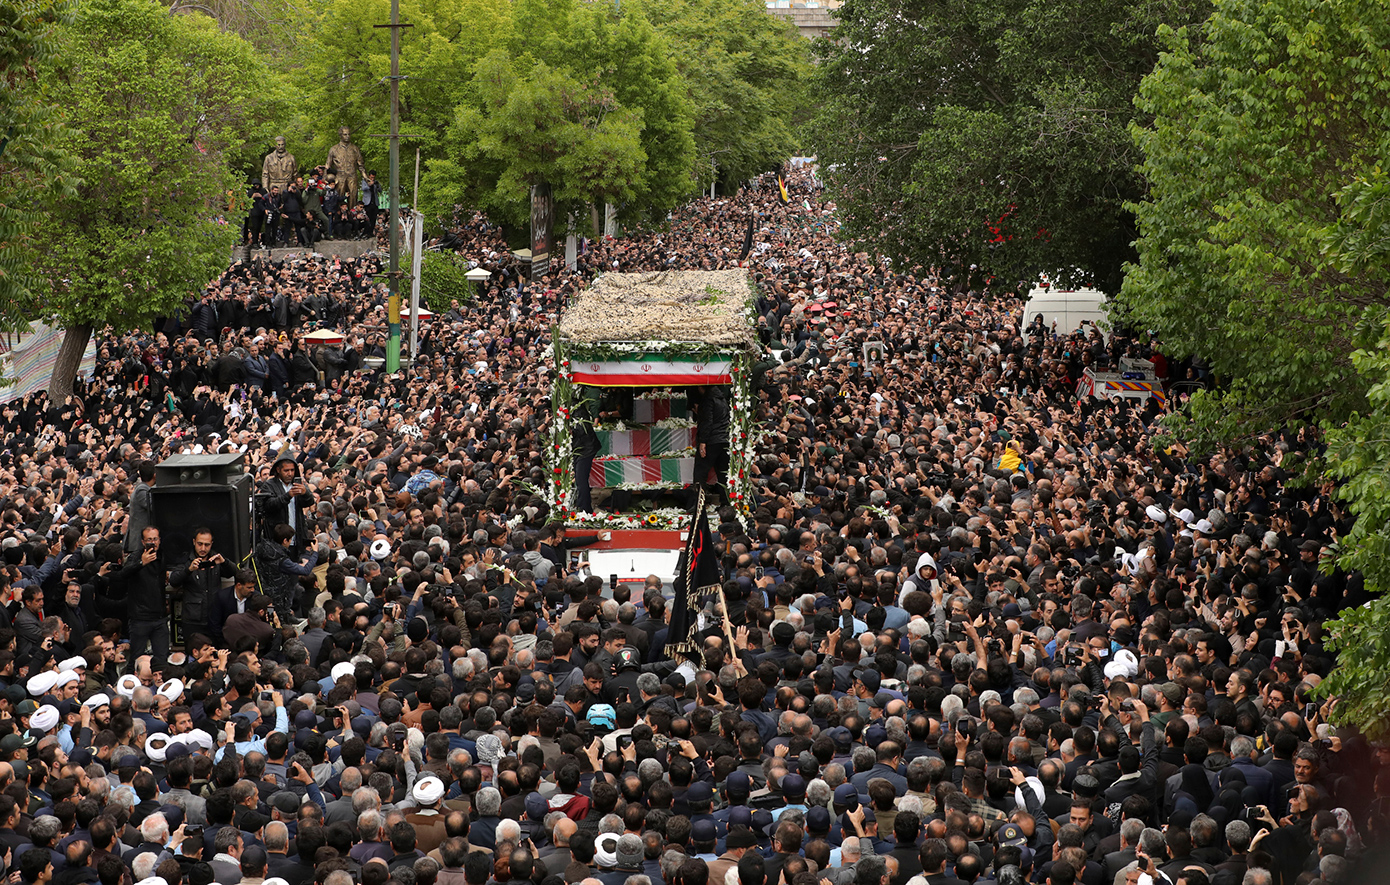 Τεράστιο πλήθος συγκεντρώθηκε στην Τεχεράνη για να αποτίσει φόρο τιμής στον εκλιπόντα πρόεδρο Ραϊσί